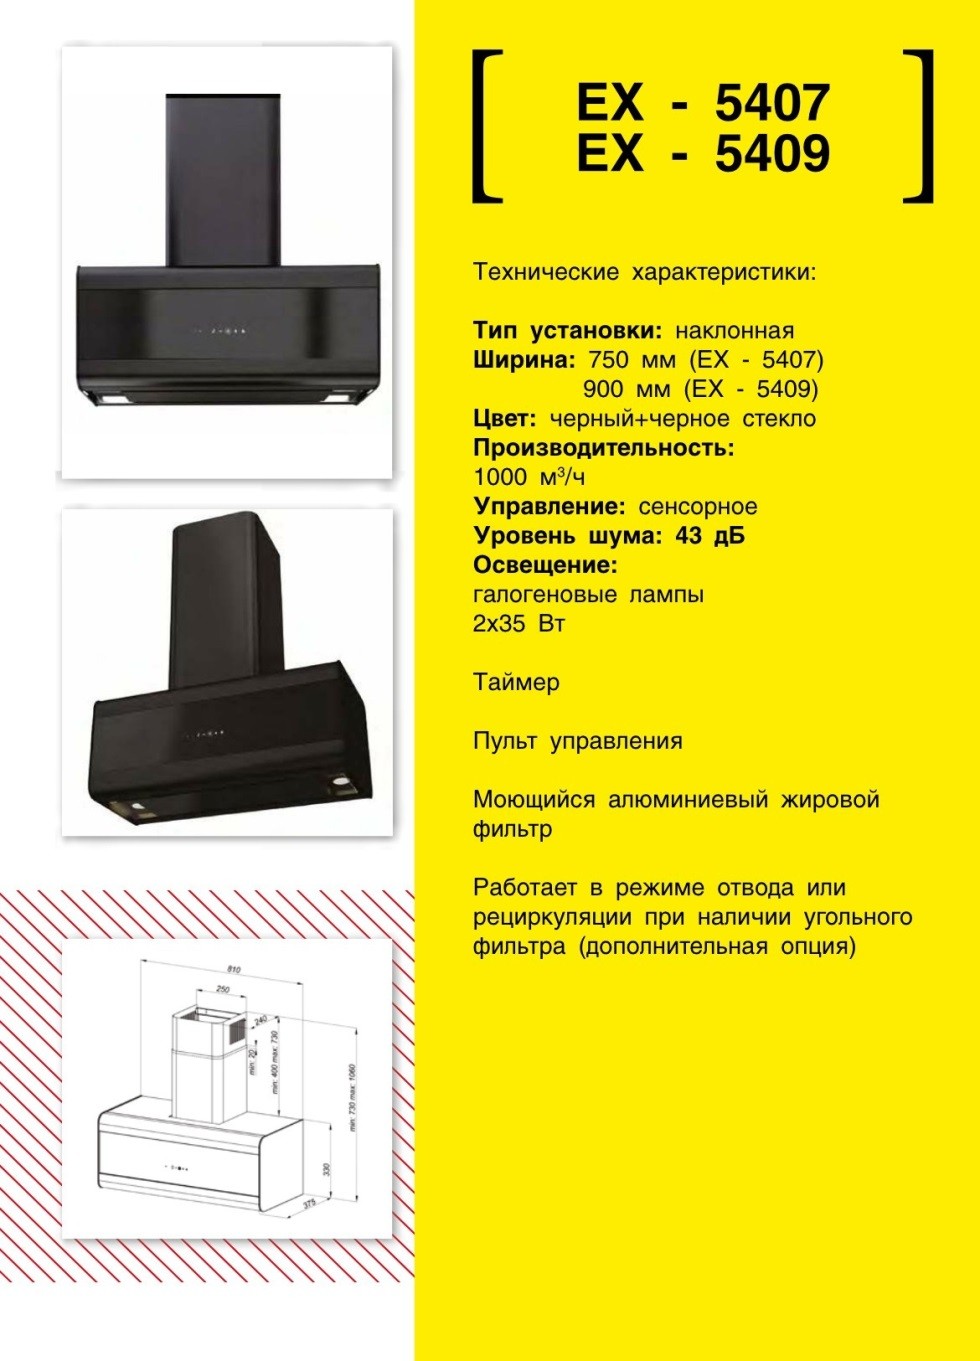 Купольная вытяжка EXITEQ EX 5407. Продажа встраиваемой техники в Беларуси недорого